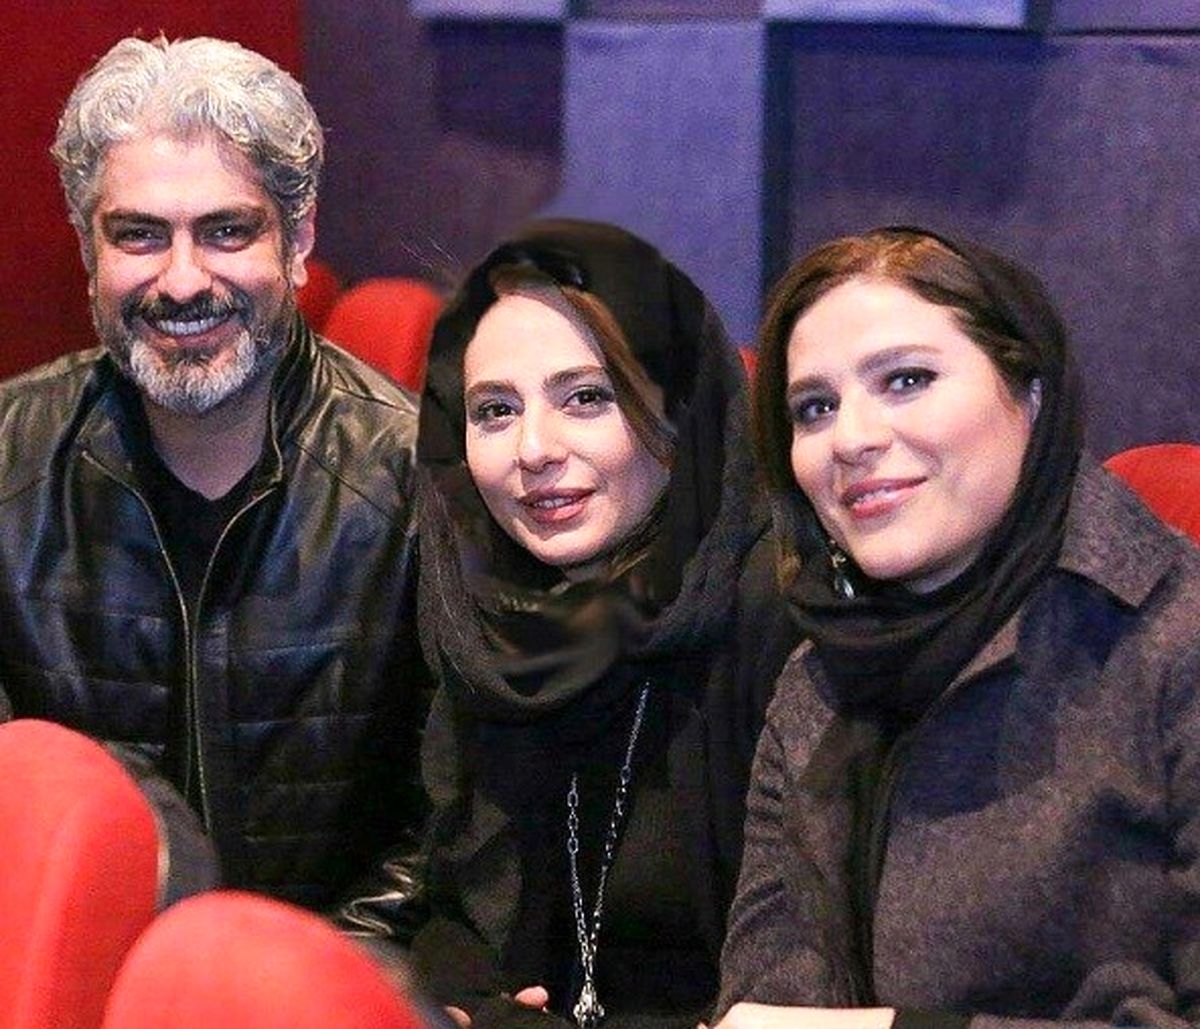 سحر دولتشاهی در کنار رعنا آزادی ور و همسرش مهدی پاکدل